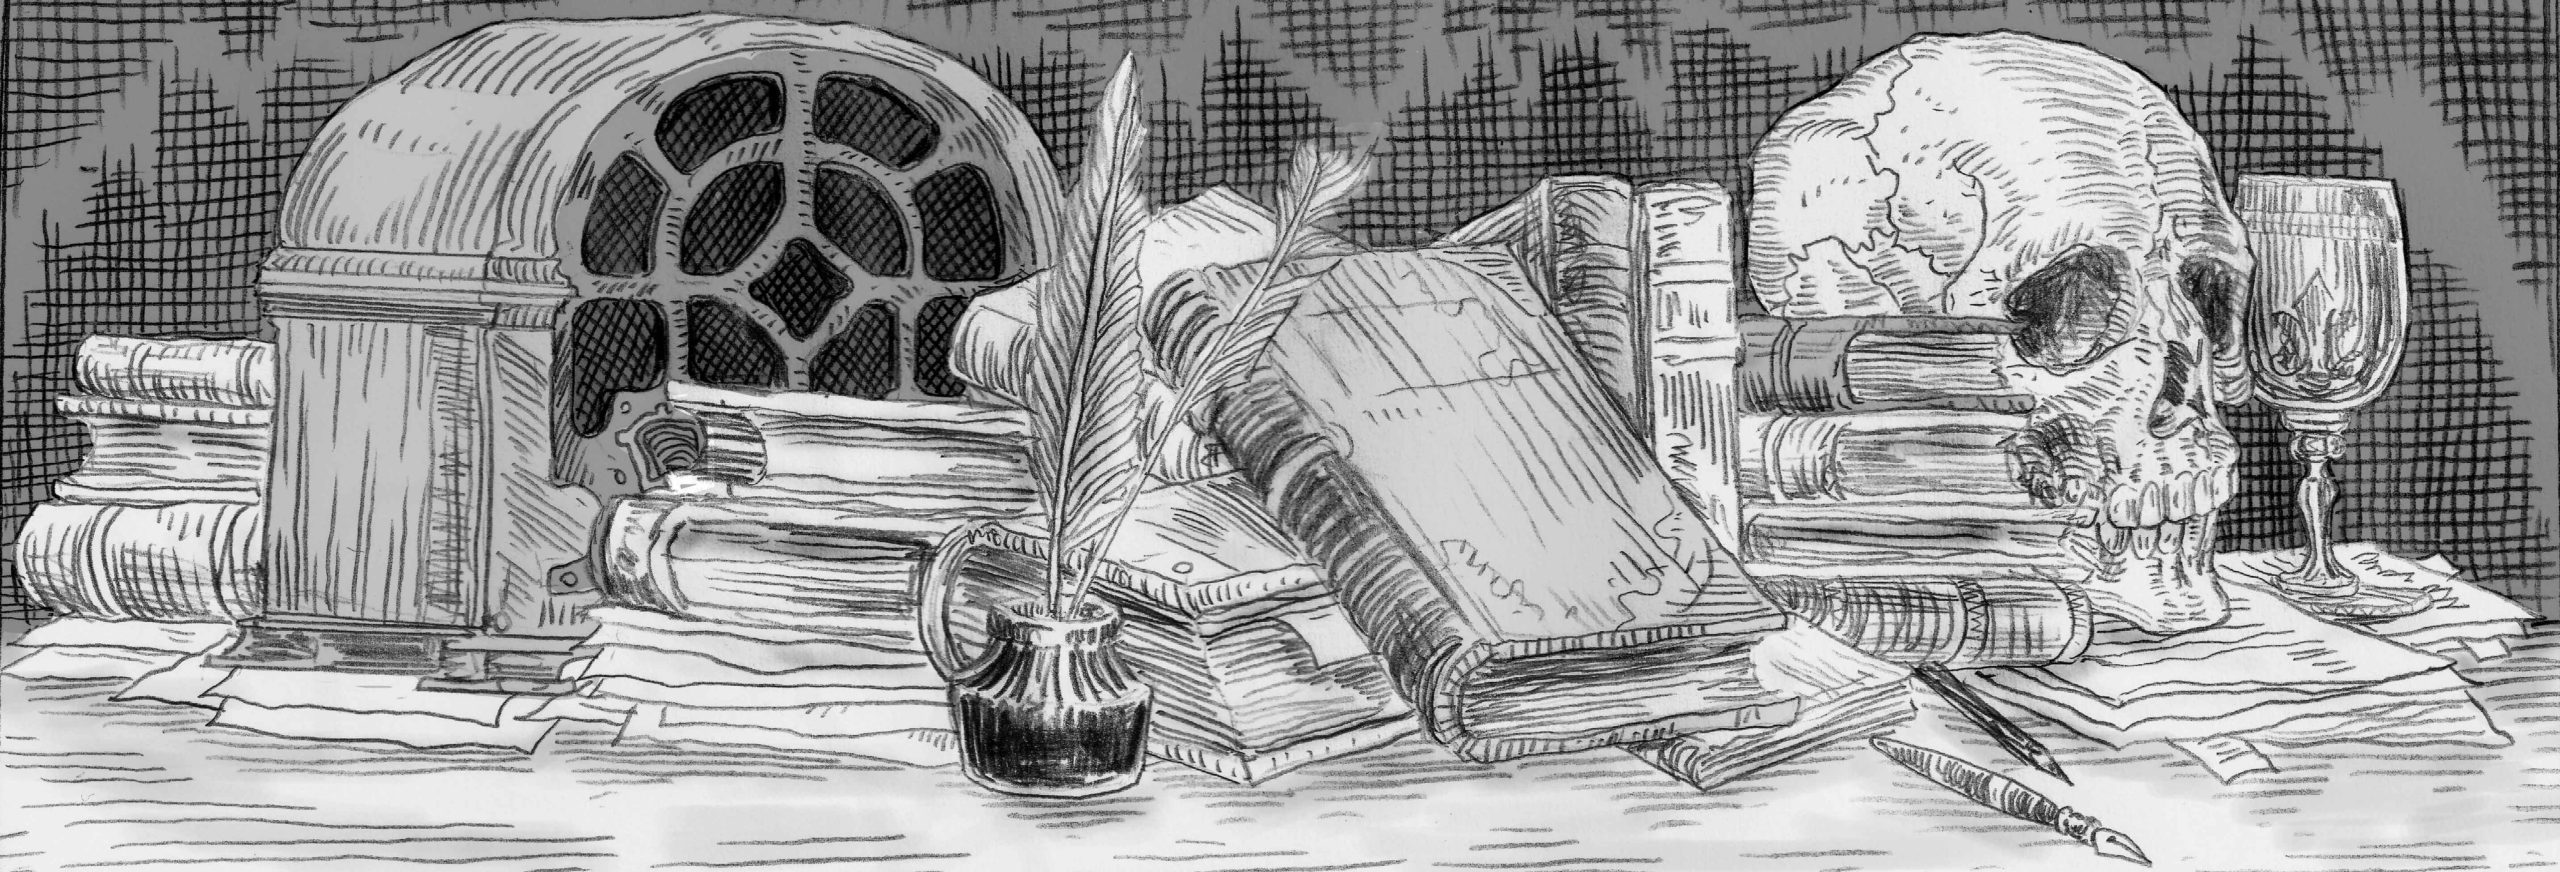 A imagem em preto e branco, com os traços do lápis nítido, mostra uma mesa com alguns objetos em cima: um rádio antigo, livros e papéis, um pote de nanquin com penas e, à direita, um crânio humano ao lado de uma taça adornada.